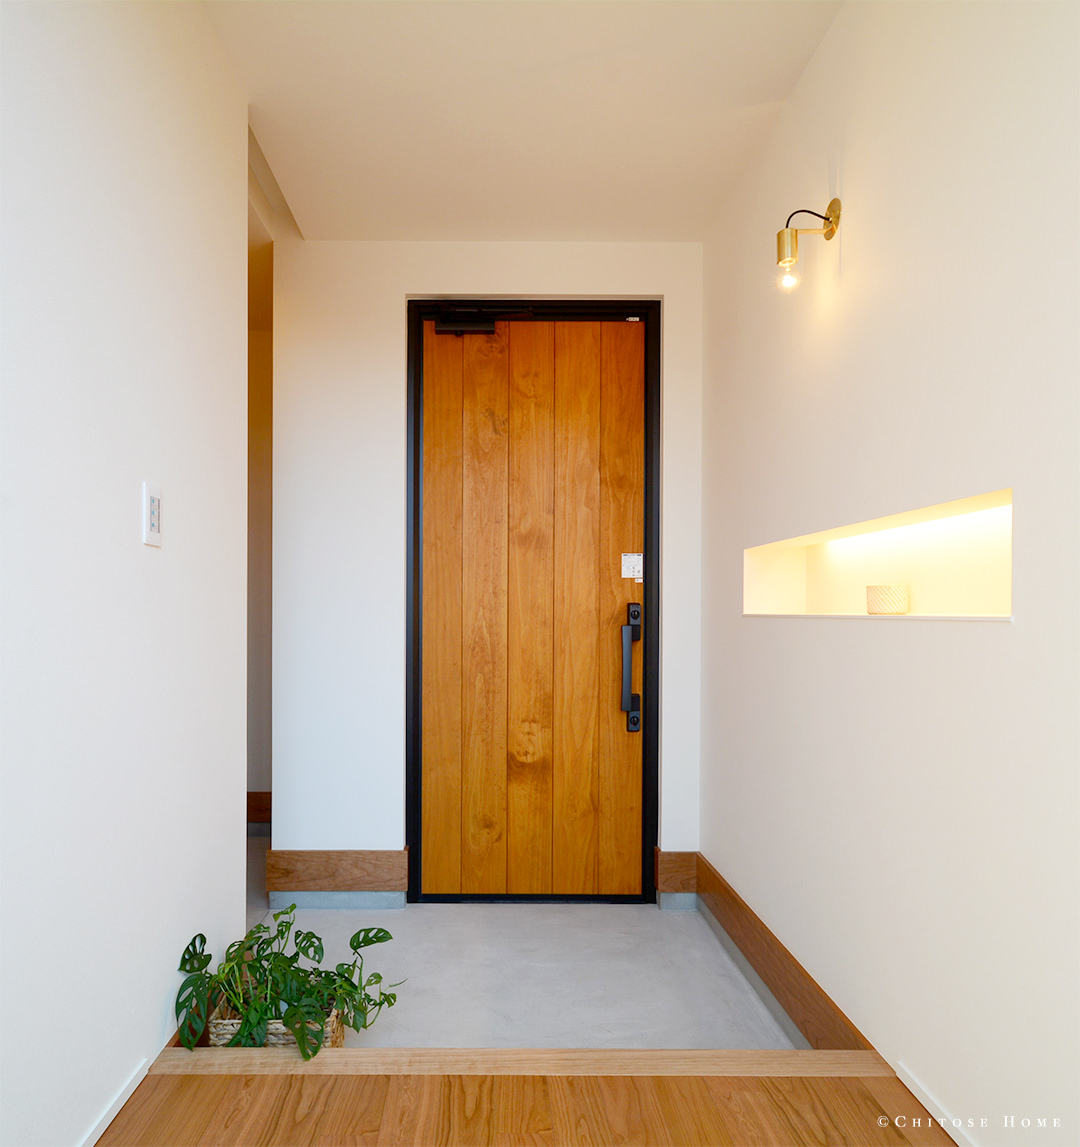 モルタルの床や真鍮の照明など、素材感を活かした玄関ホール。木製パネル貼りの玄関扉とも相まって、経年美化を味わえる、こだわりの詰まった構成に。